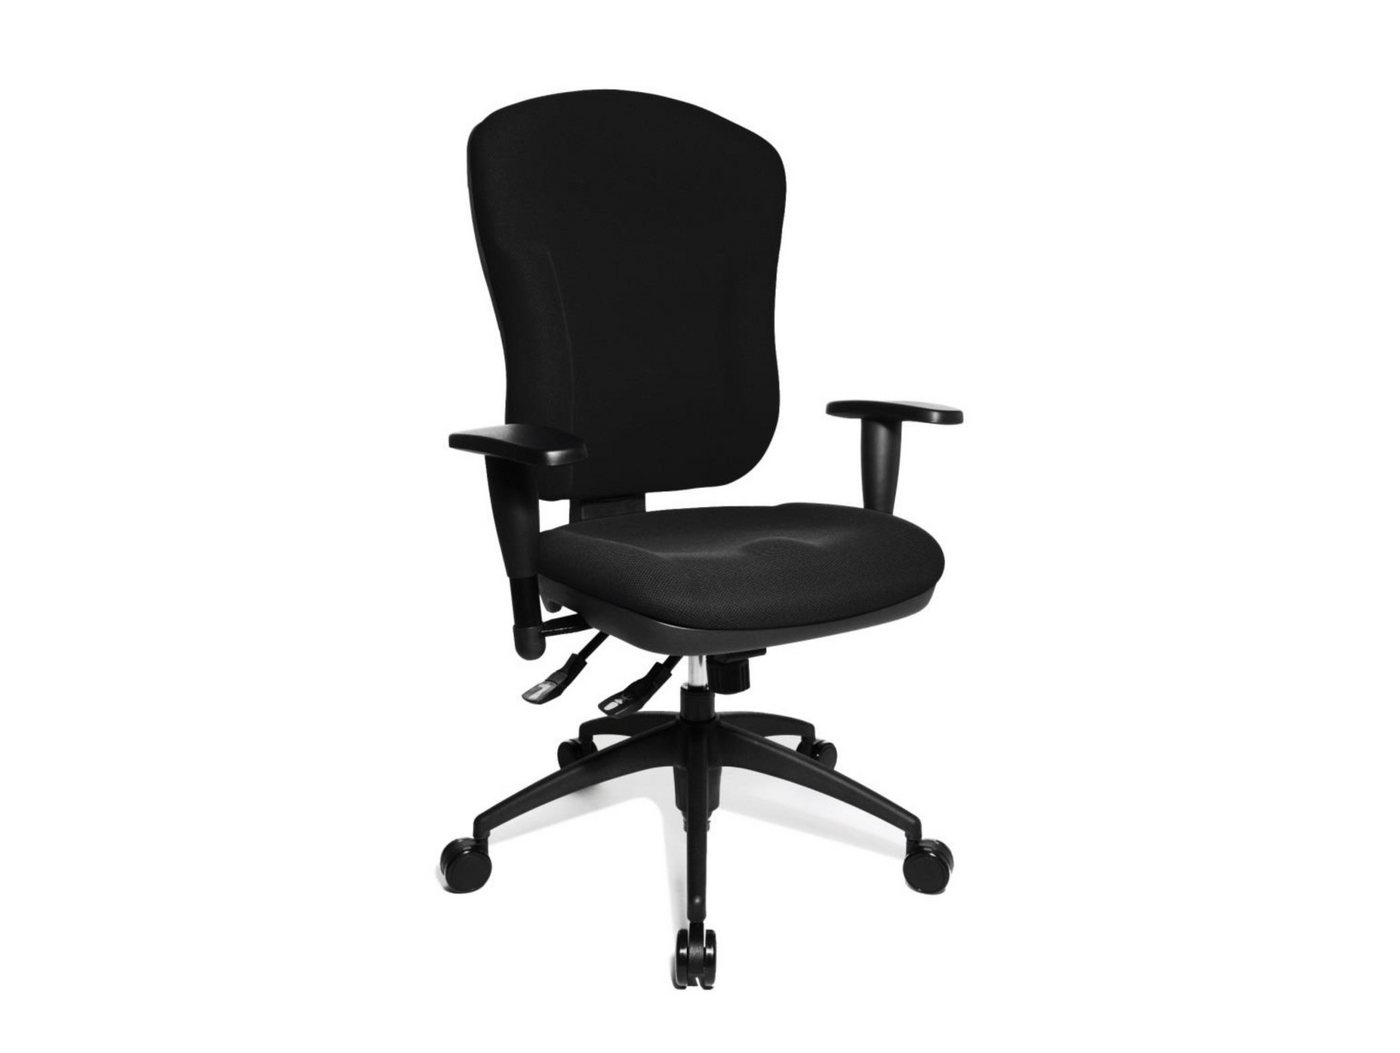 Moebel-Eins Stuhl, Wellpoint 30 P Drehstuhl, Material Stoff/Kunststoff, schwarz von Moebel-Eins